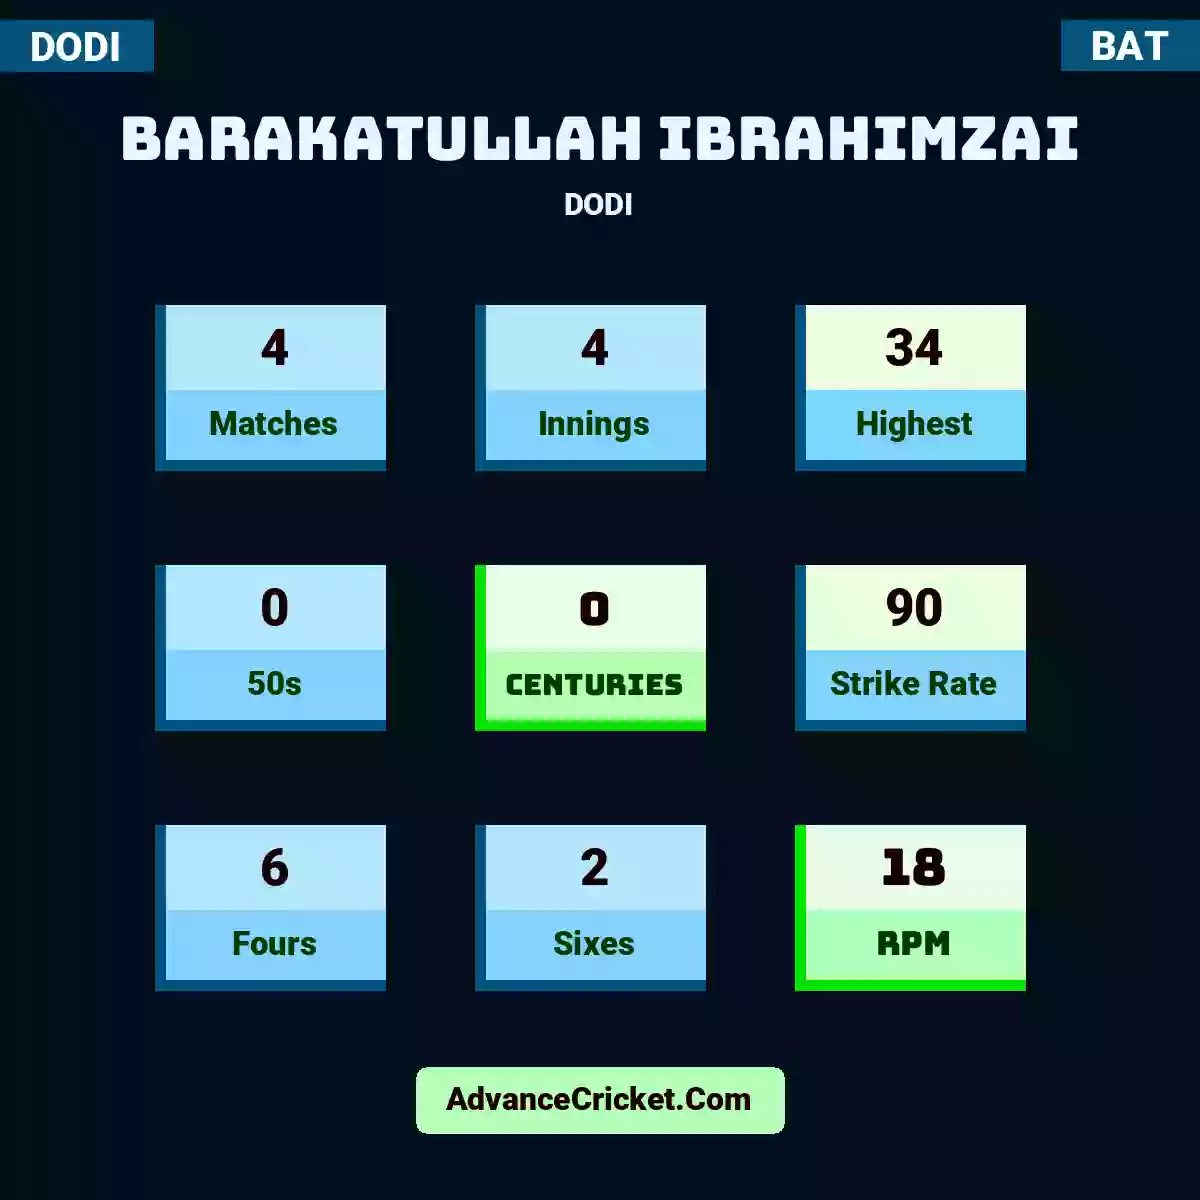 Barakatullah Ibrahimzai DODI , Barakatullah Ibrahimzai played 4 matches, scored 34 runs as highest, 0 half-centuries, and 0 centuries, with a strike rate of 90. B.Ibrahimzai hit 6 fours and 2 sixes, with an RPM of 18.